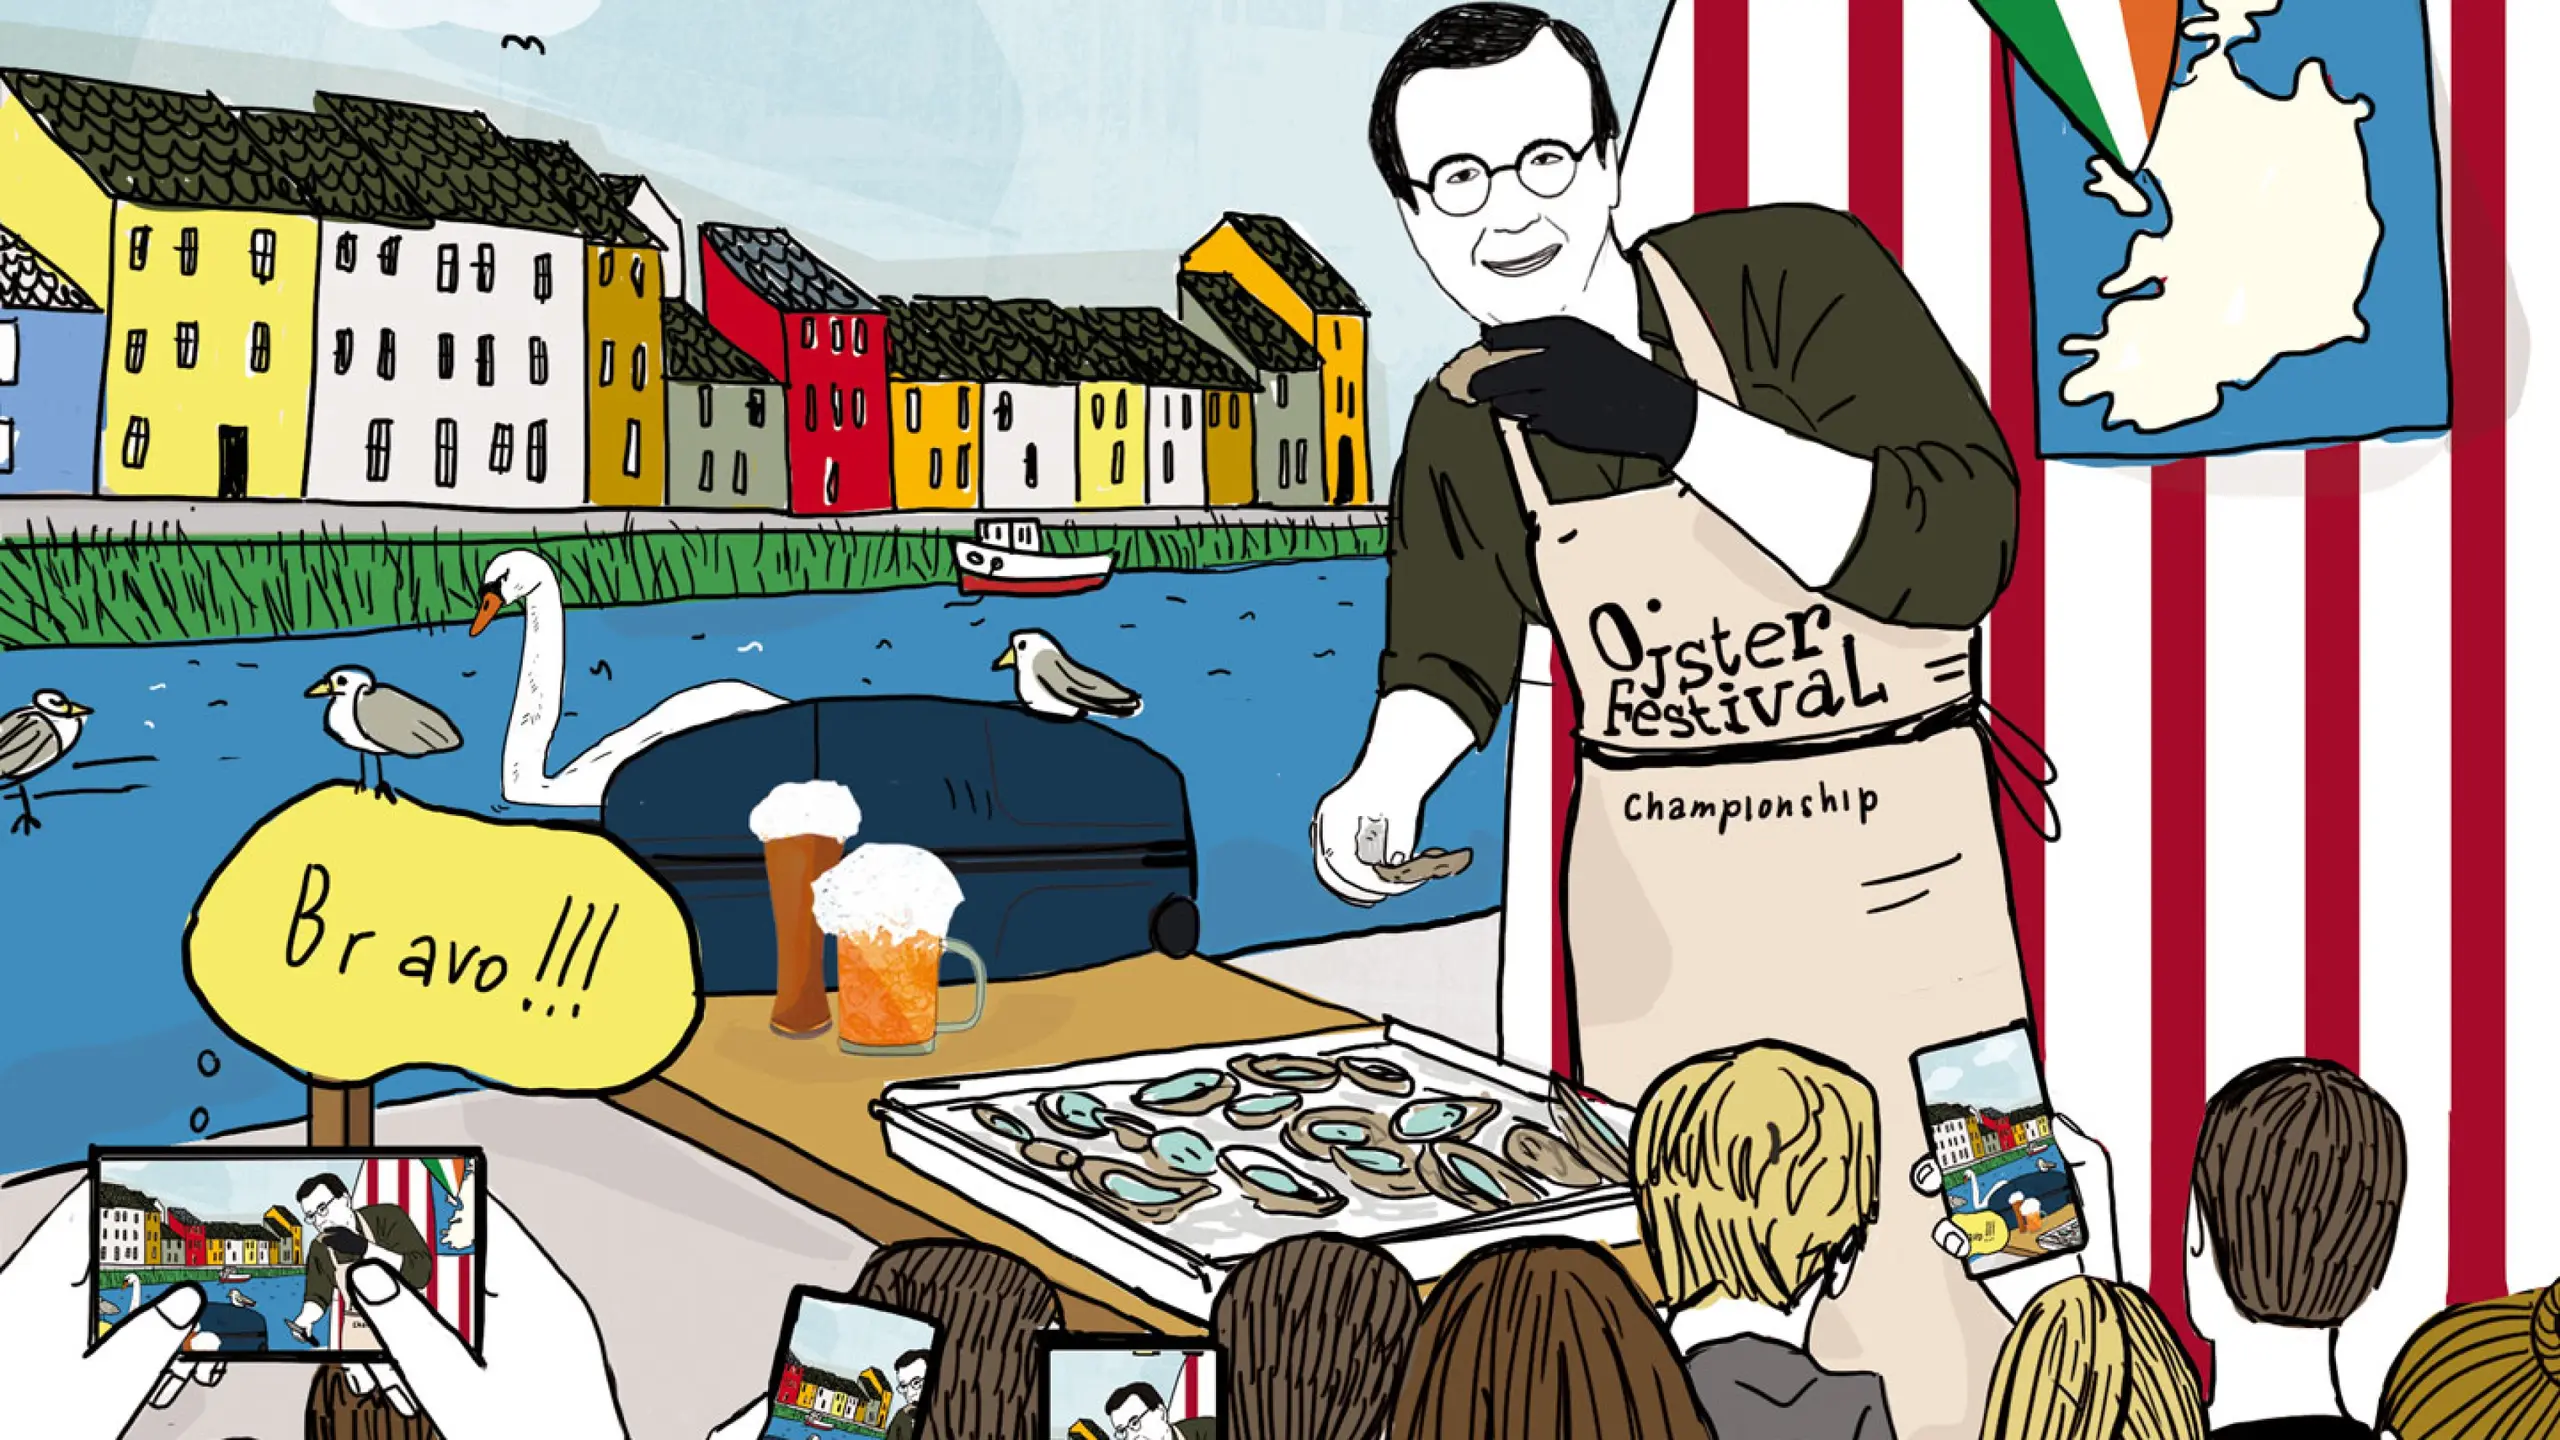 The Hans am Austernfestival Galway + die besten Austern-Lokale von Wien bis Boston